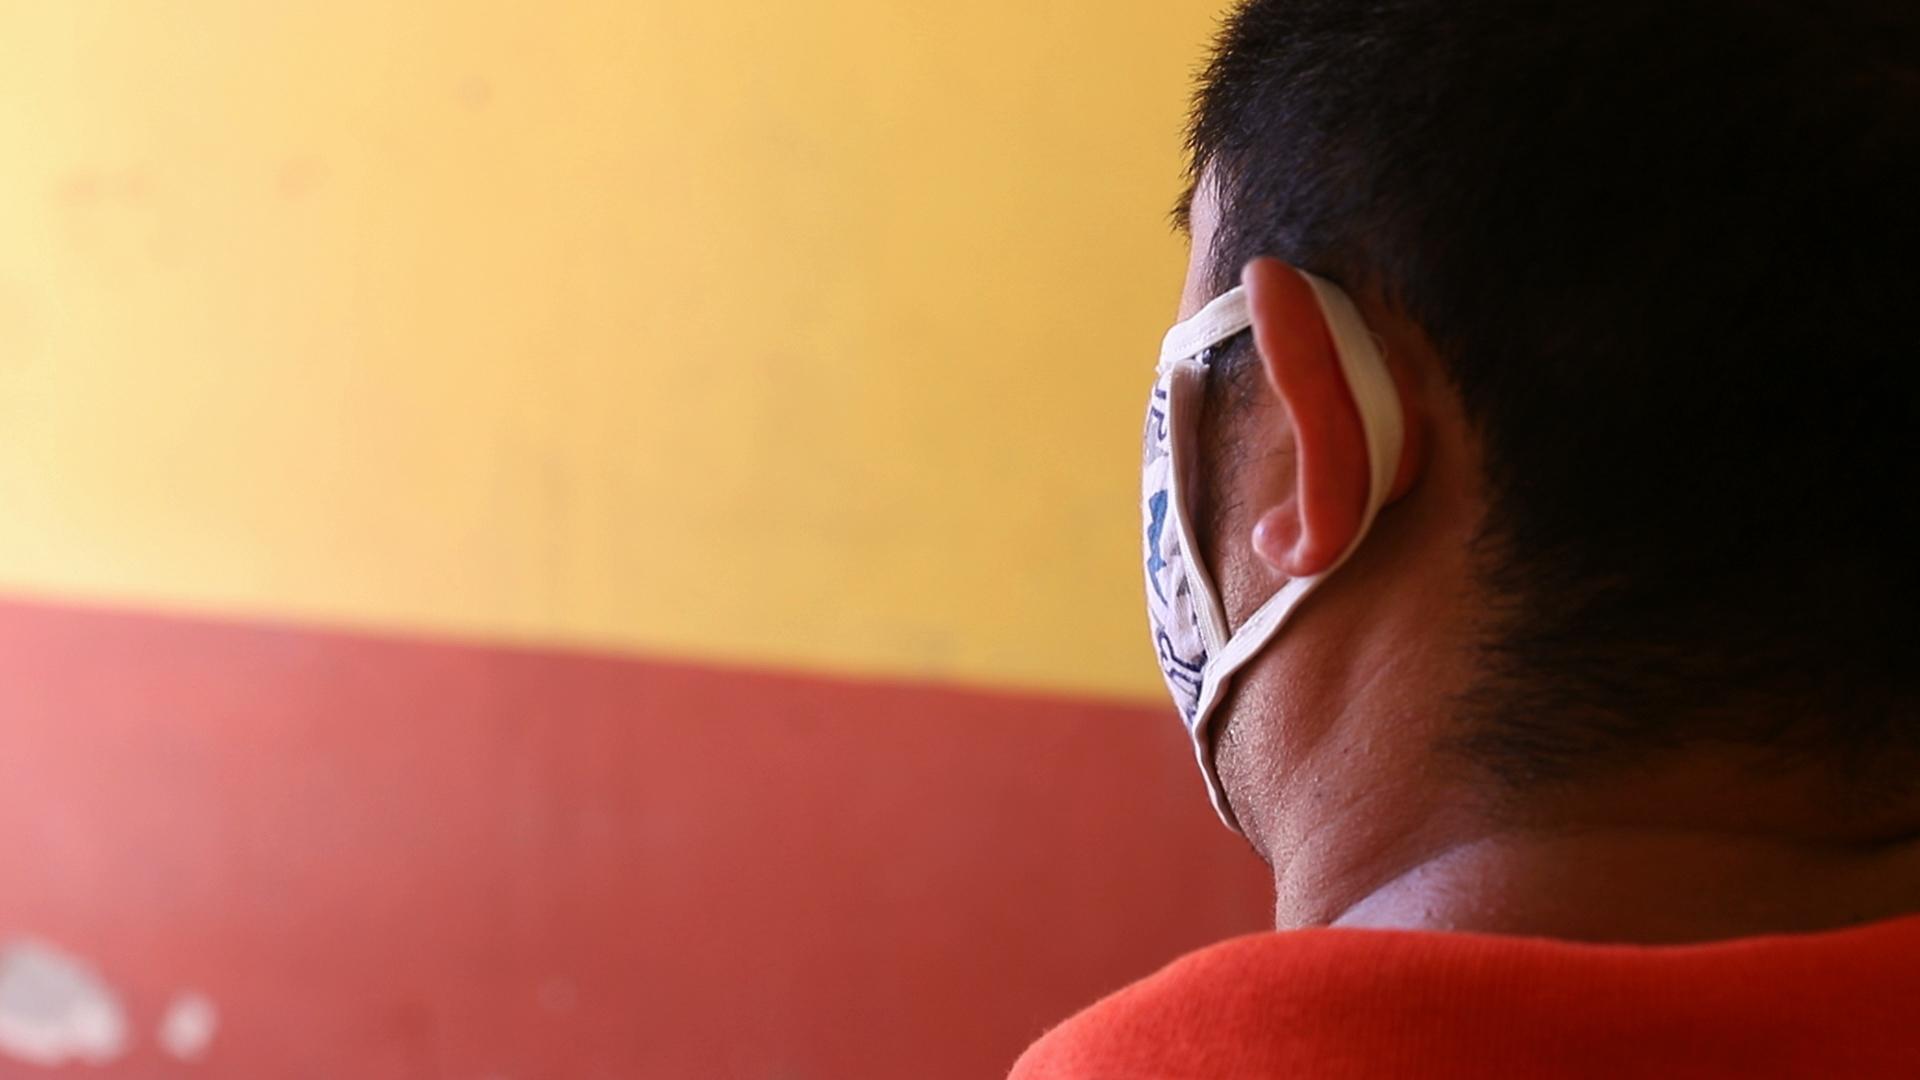 Arturo was subject to a xenophobic attack in Oluta, Veracruz, in February.